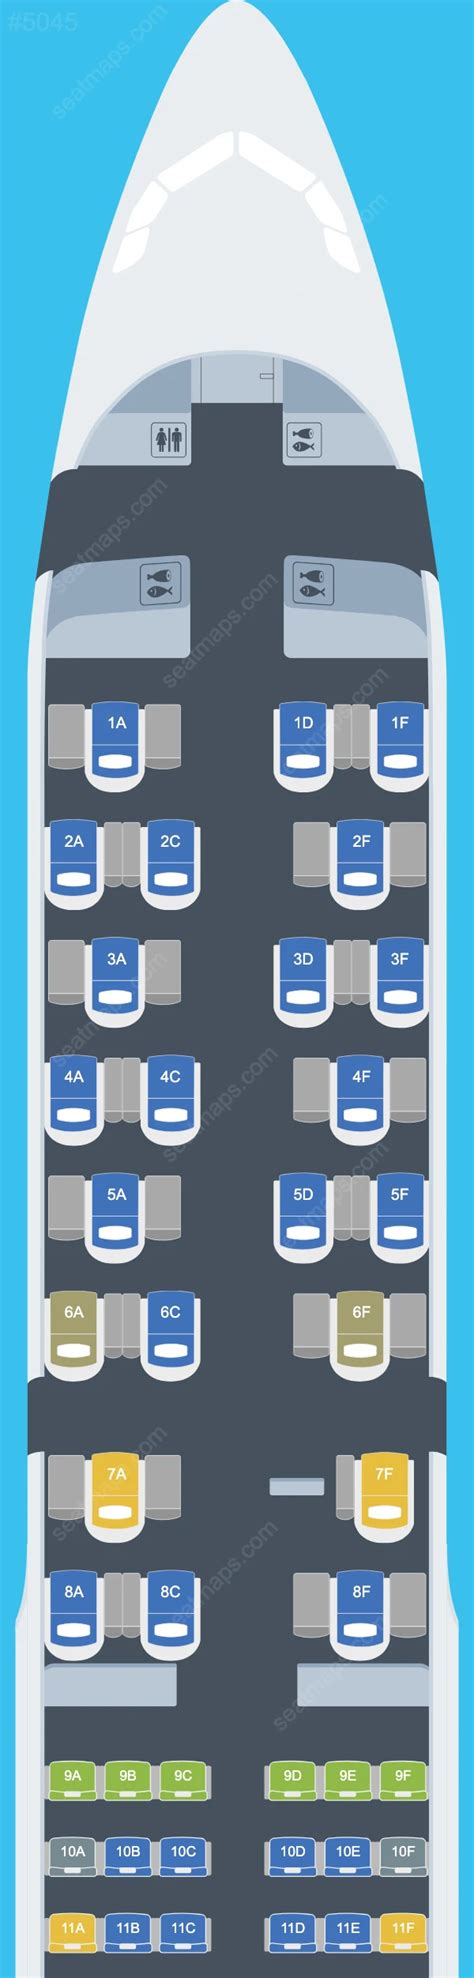 British Airways A320 Seat Map